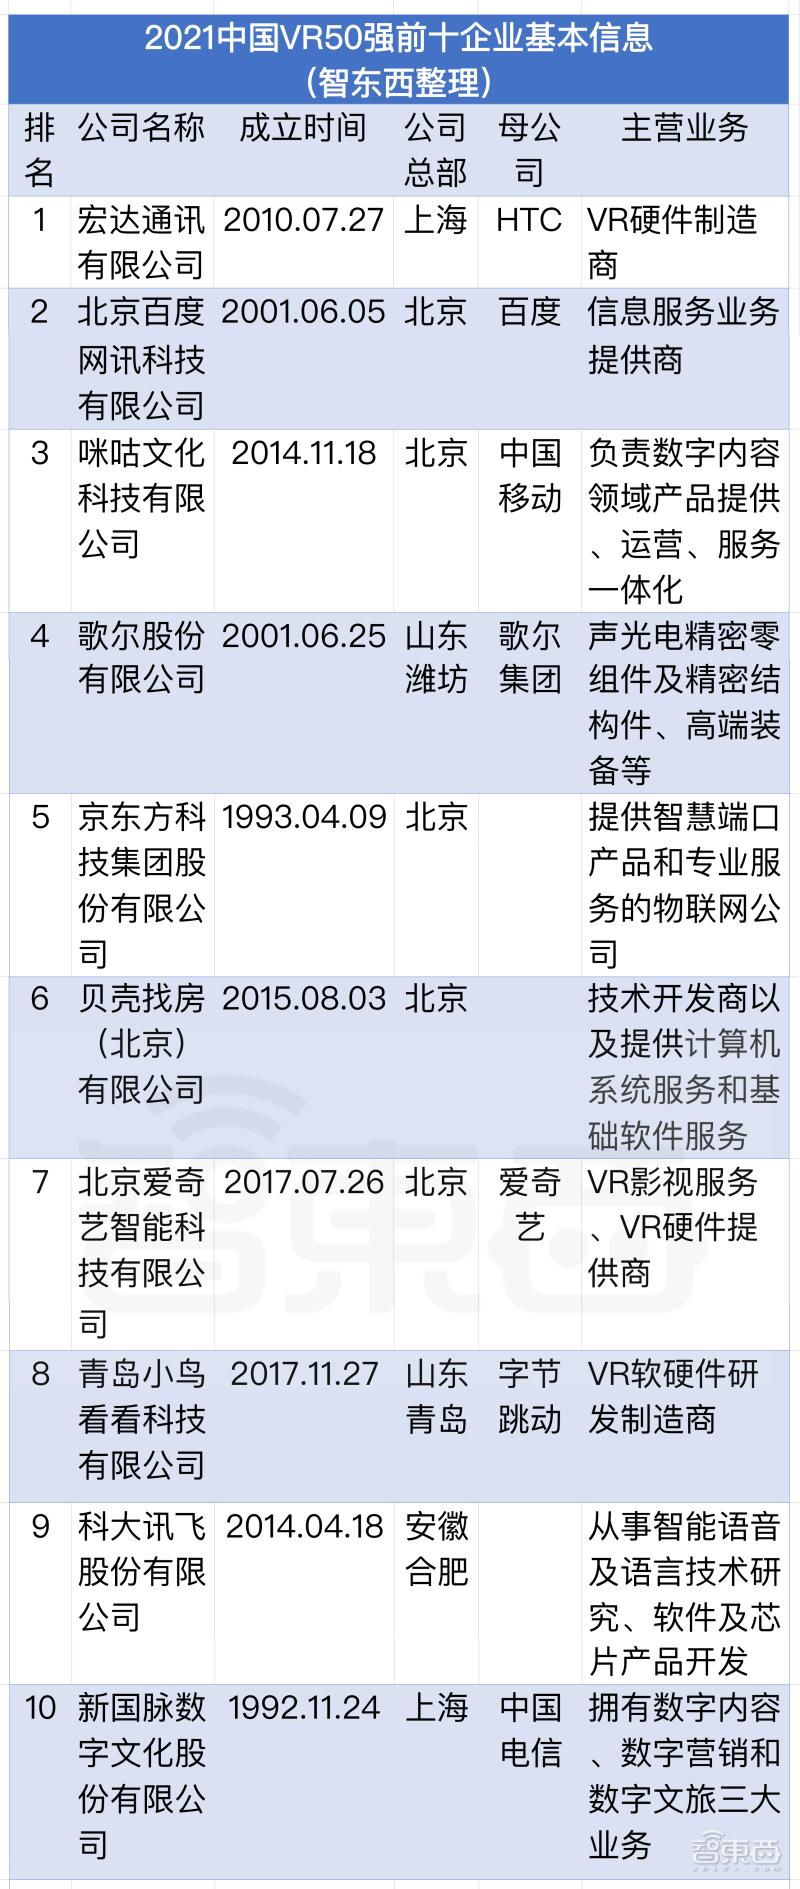 ▲2021年中国VR前10强企业的公司信息